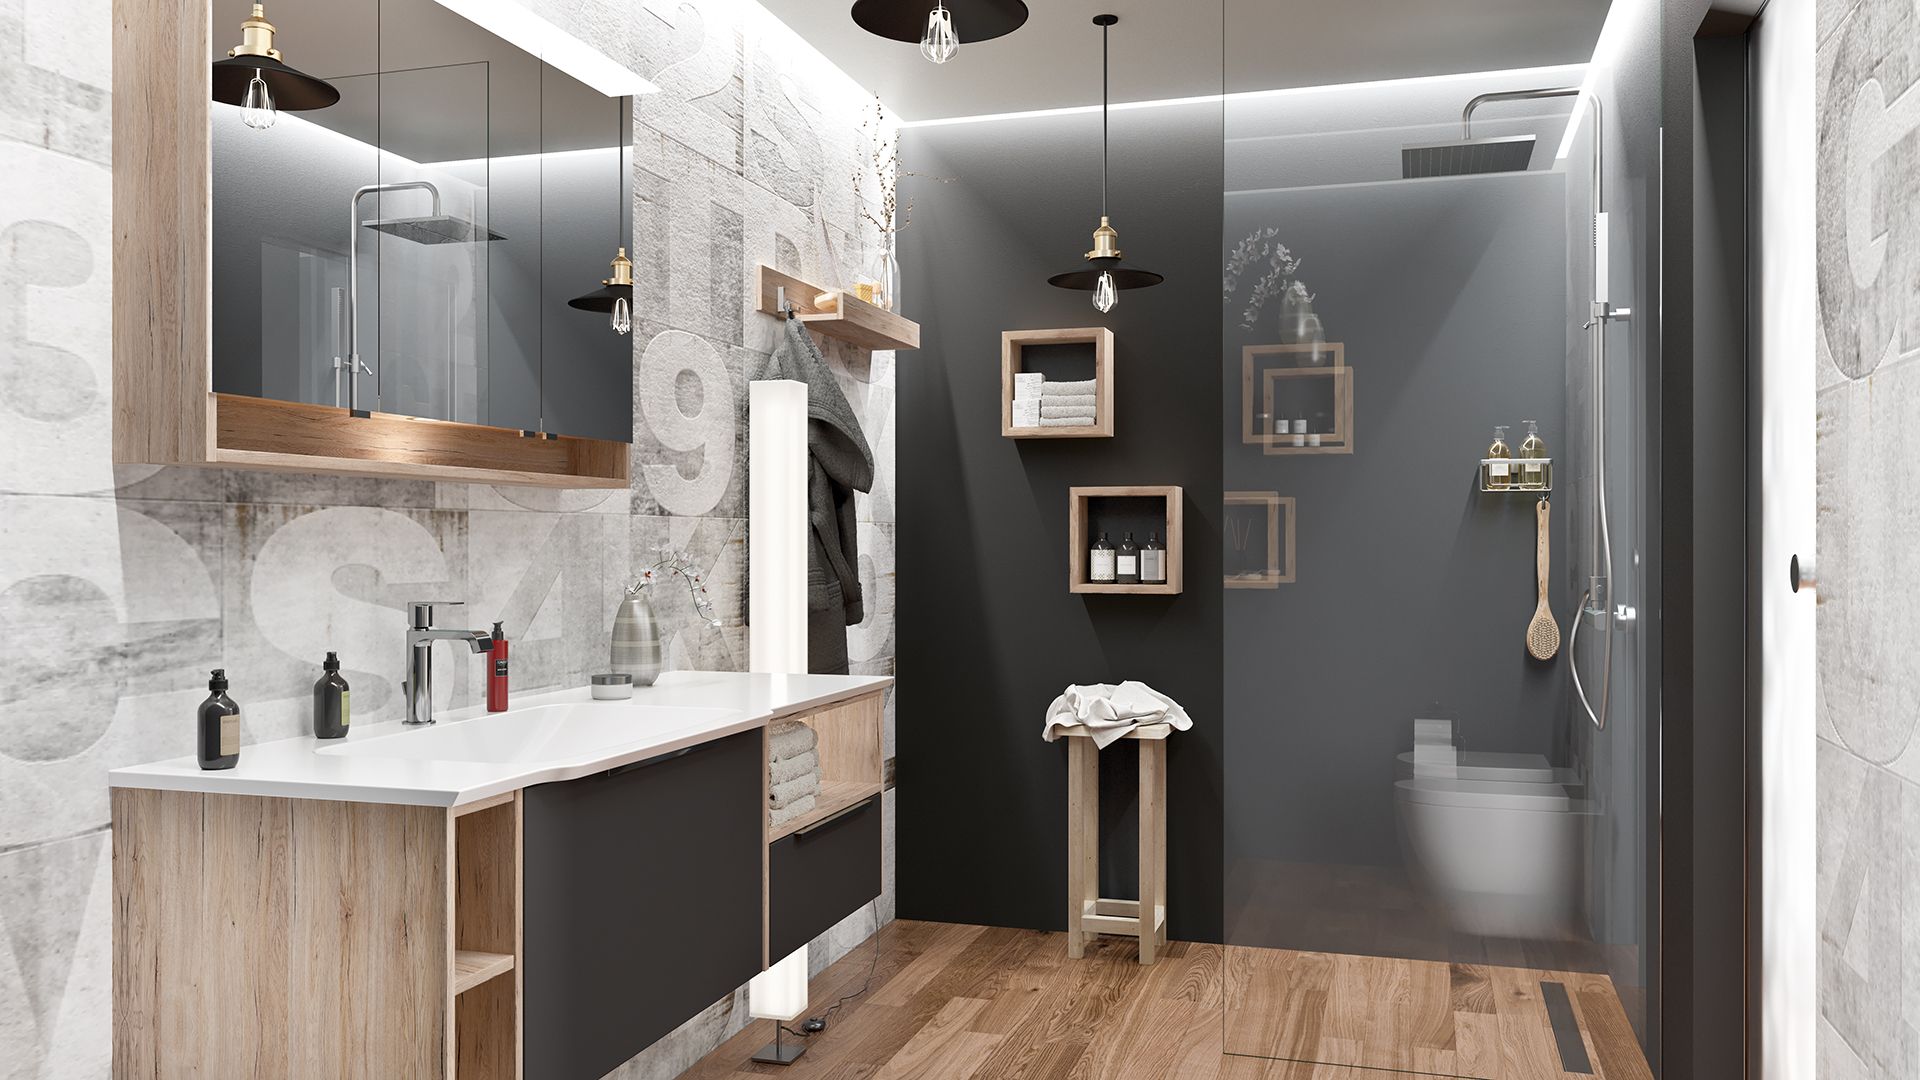 Dunkles Badezimmer mit ebenerdiger Dusche, Waschtisch und Holzelementen